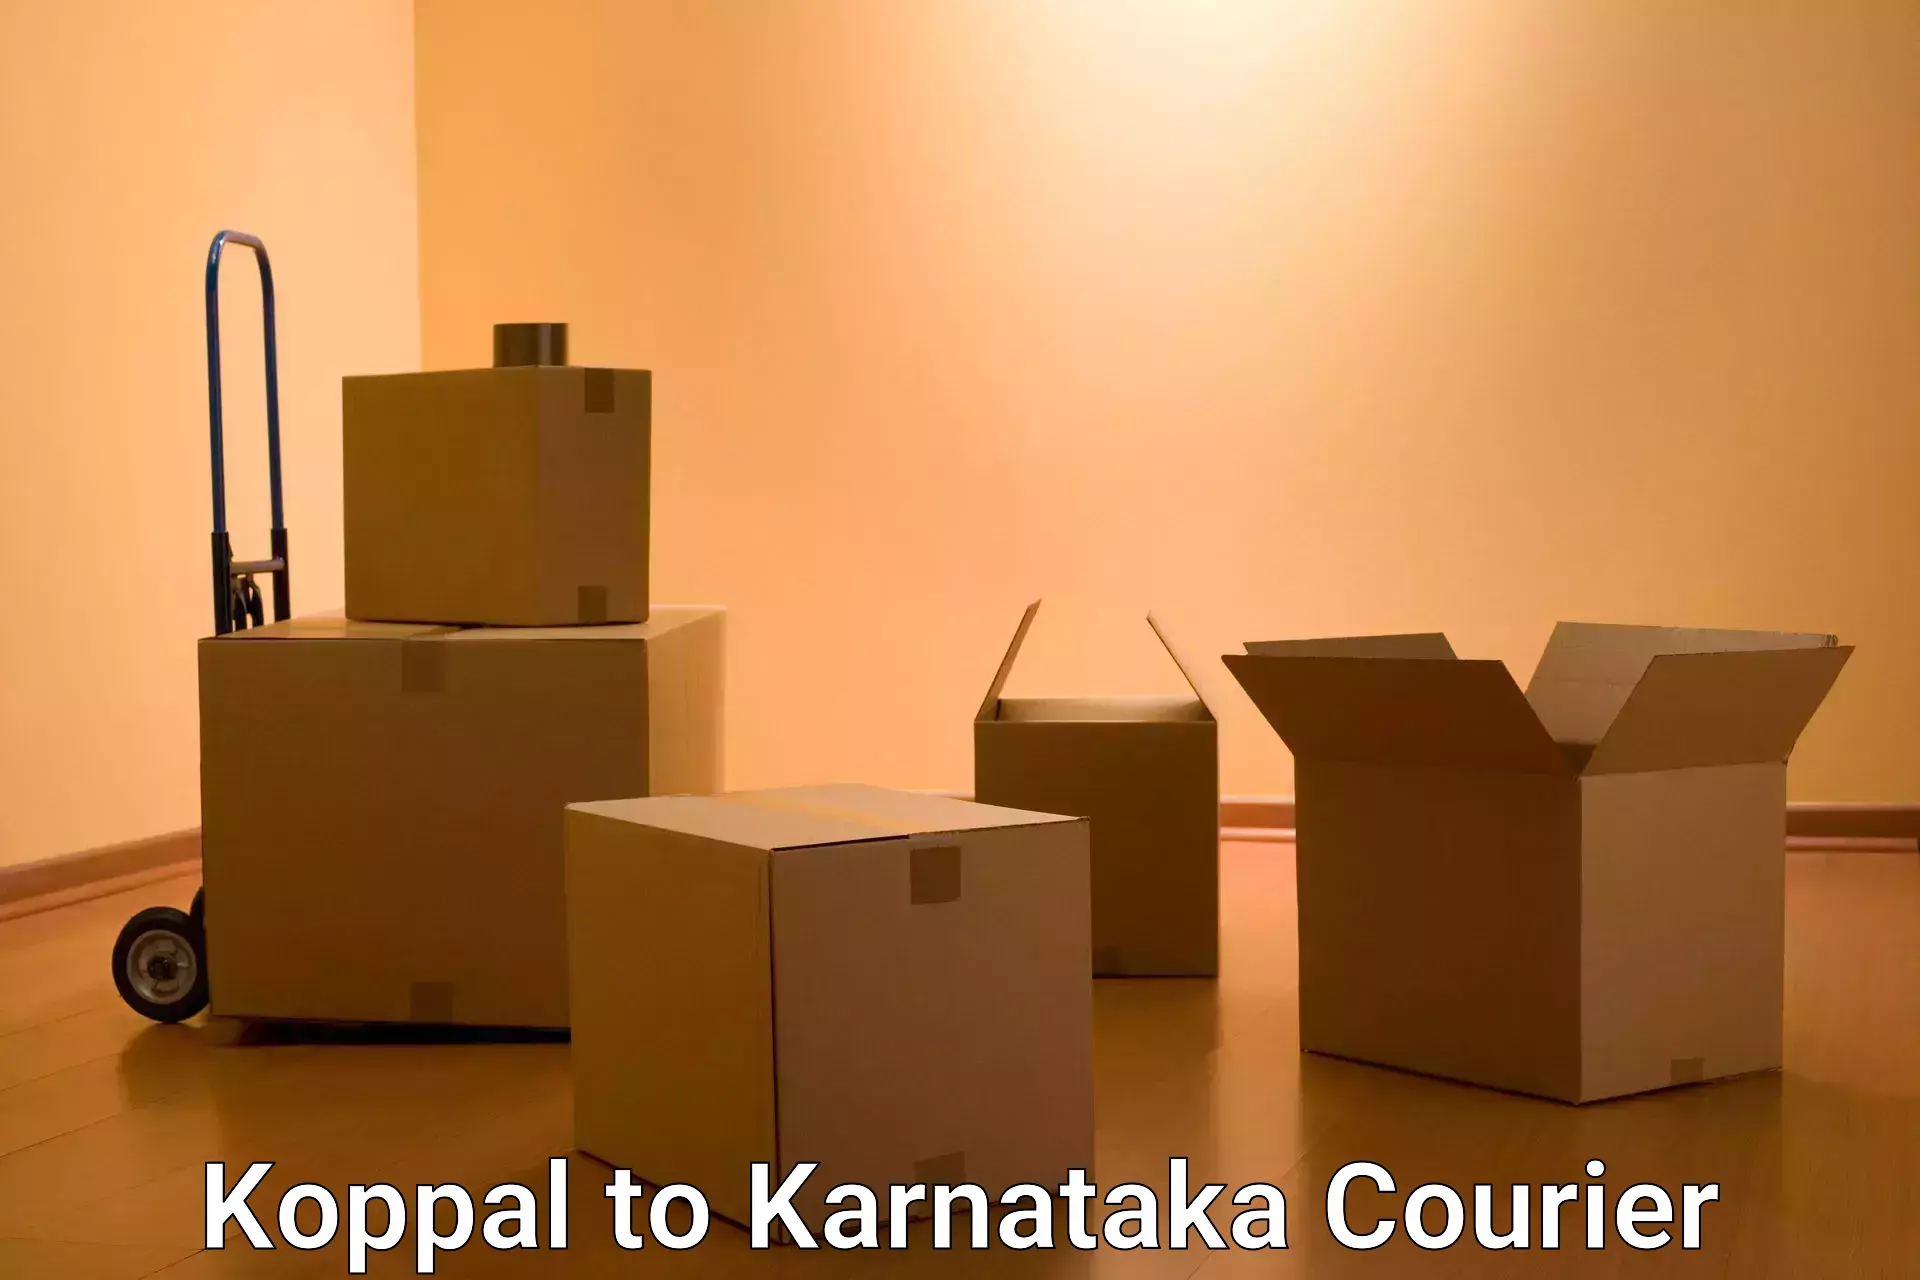 Modern delivery methods Koppal to Karnataka